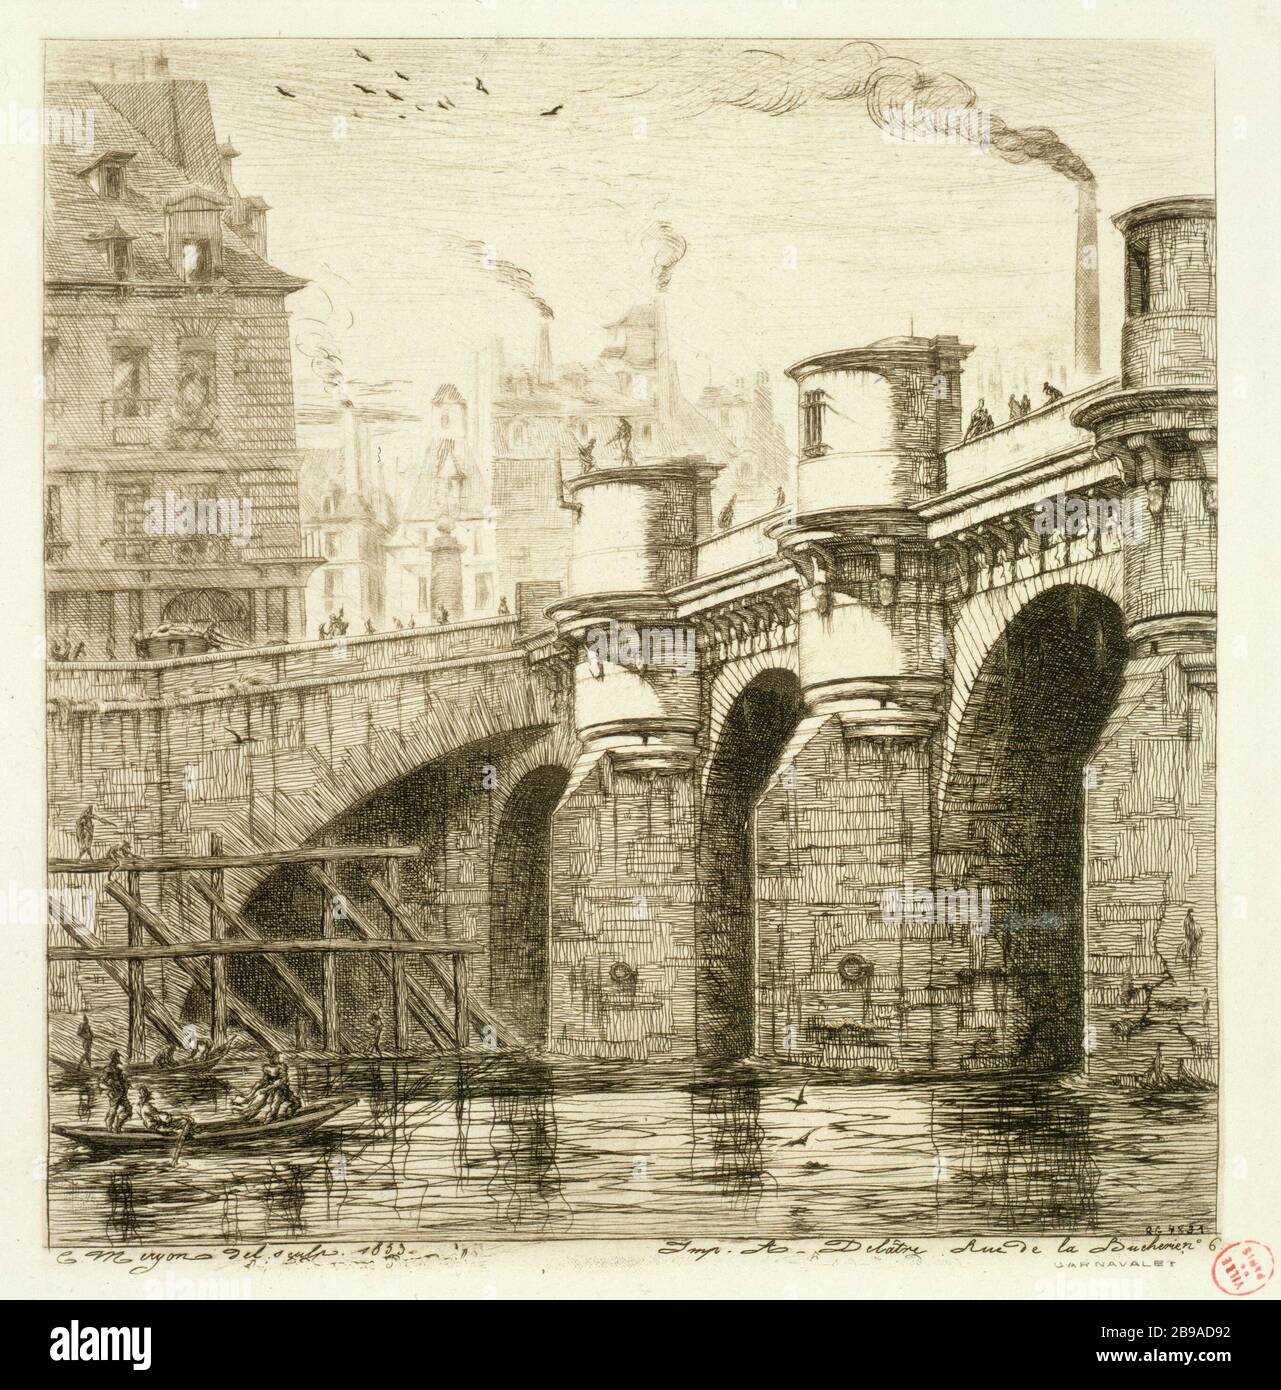 PUENTE NUEVE EN 1853 Charles Méryon (1821-1868). 'Le Pont-Neuf en 1853'. Eau-forte. París, musée Carnavalet. Foto de stock